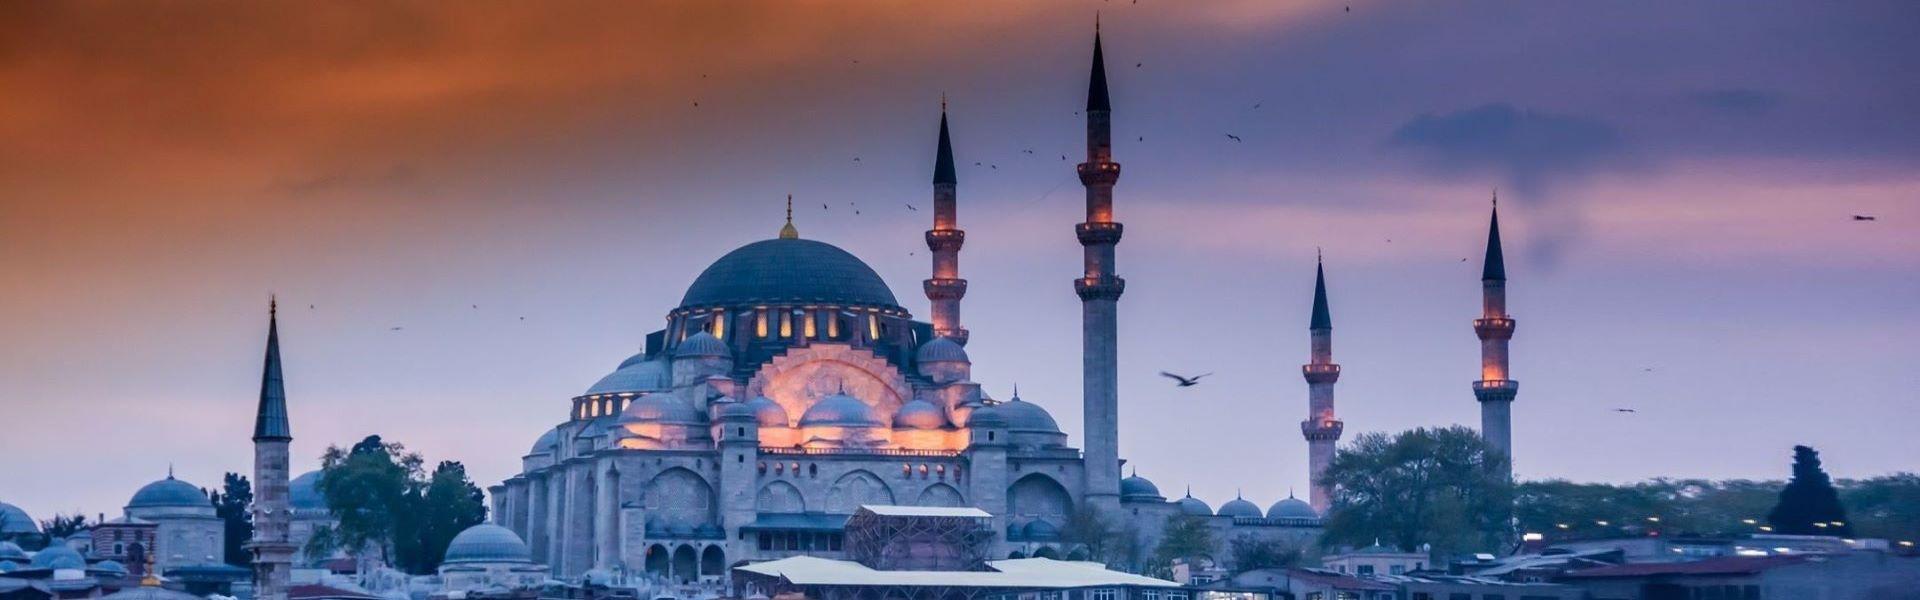 مسجد سلیمانیه  استانبول Suleymaniye mosque Istanbul